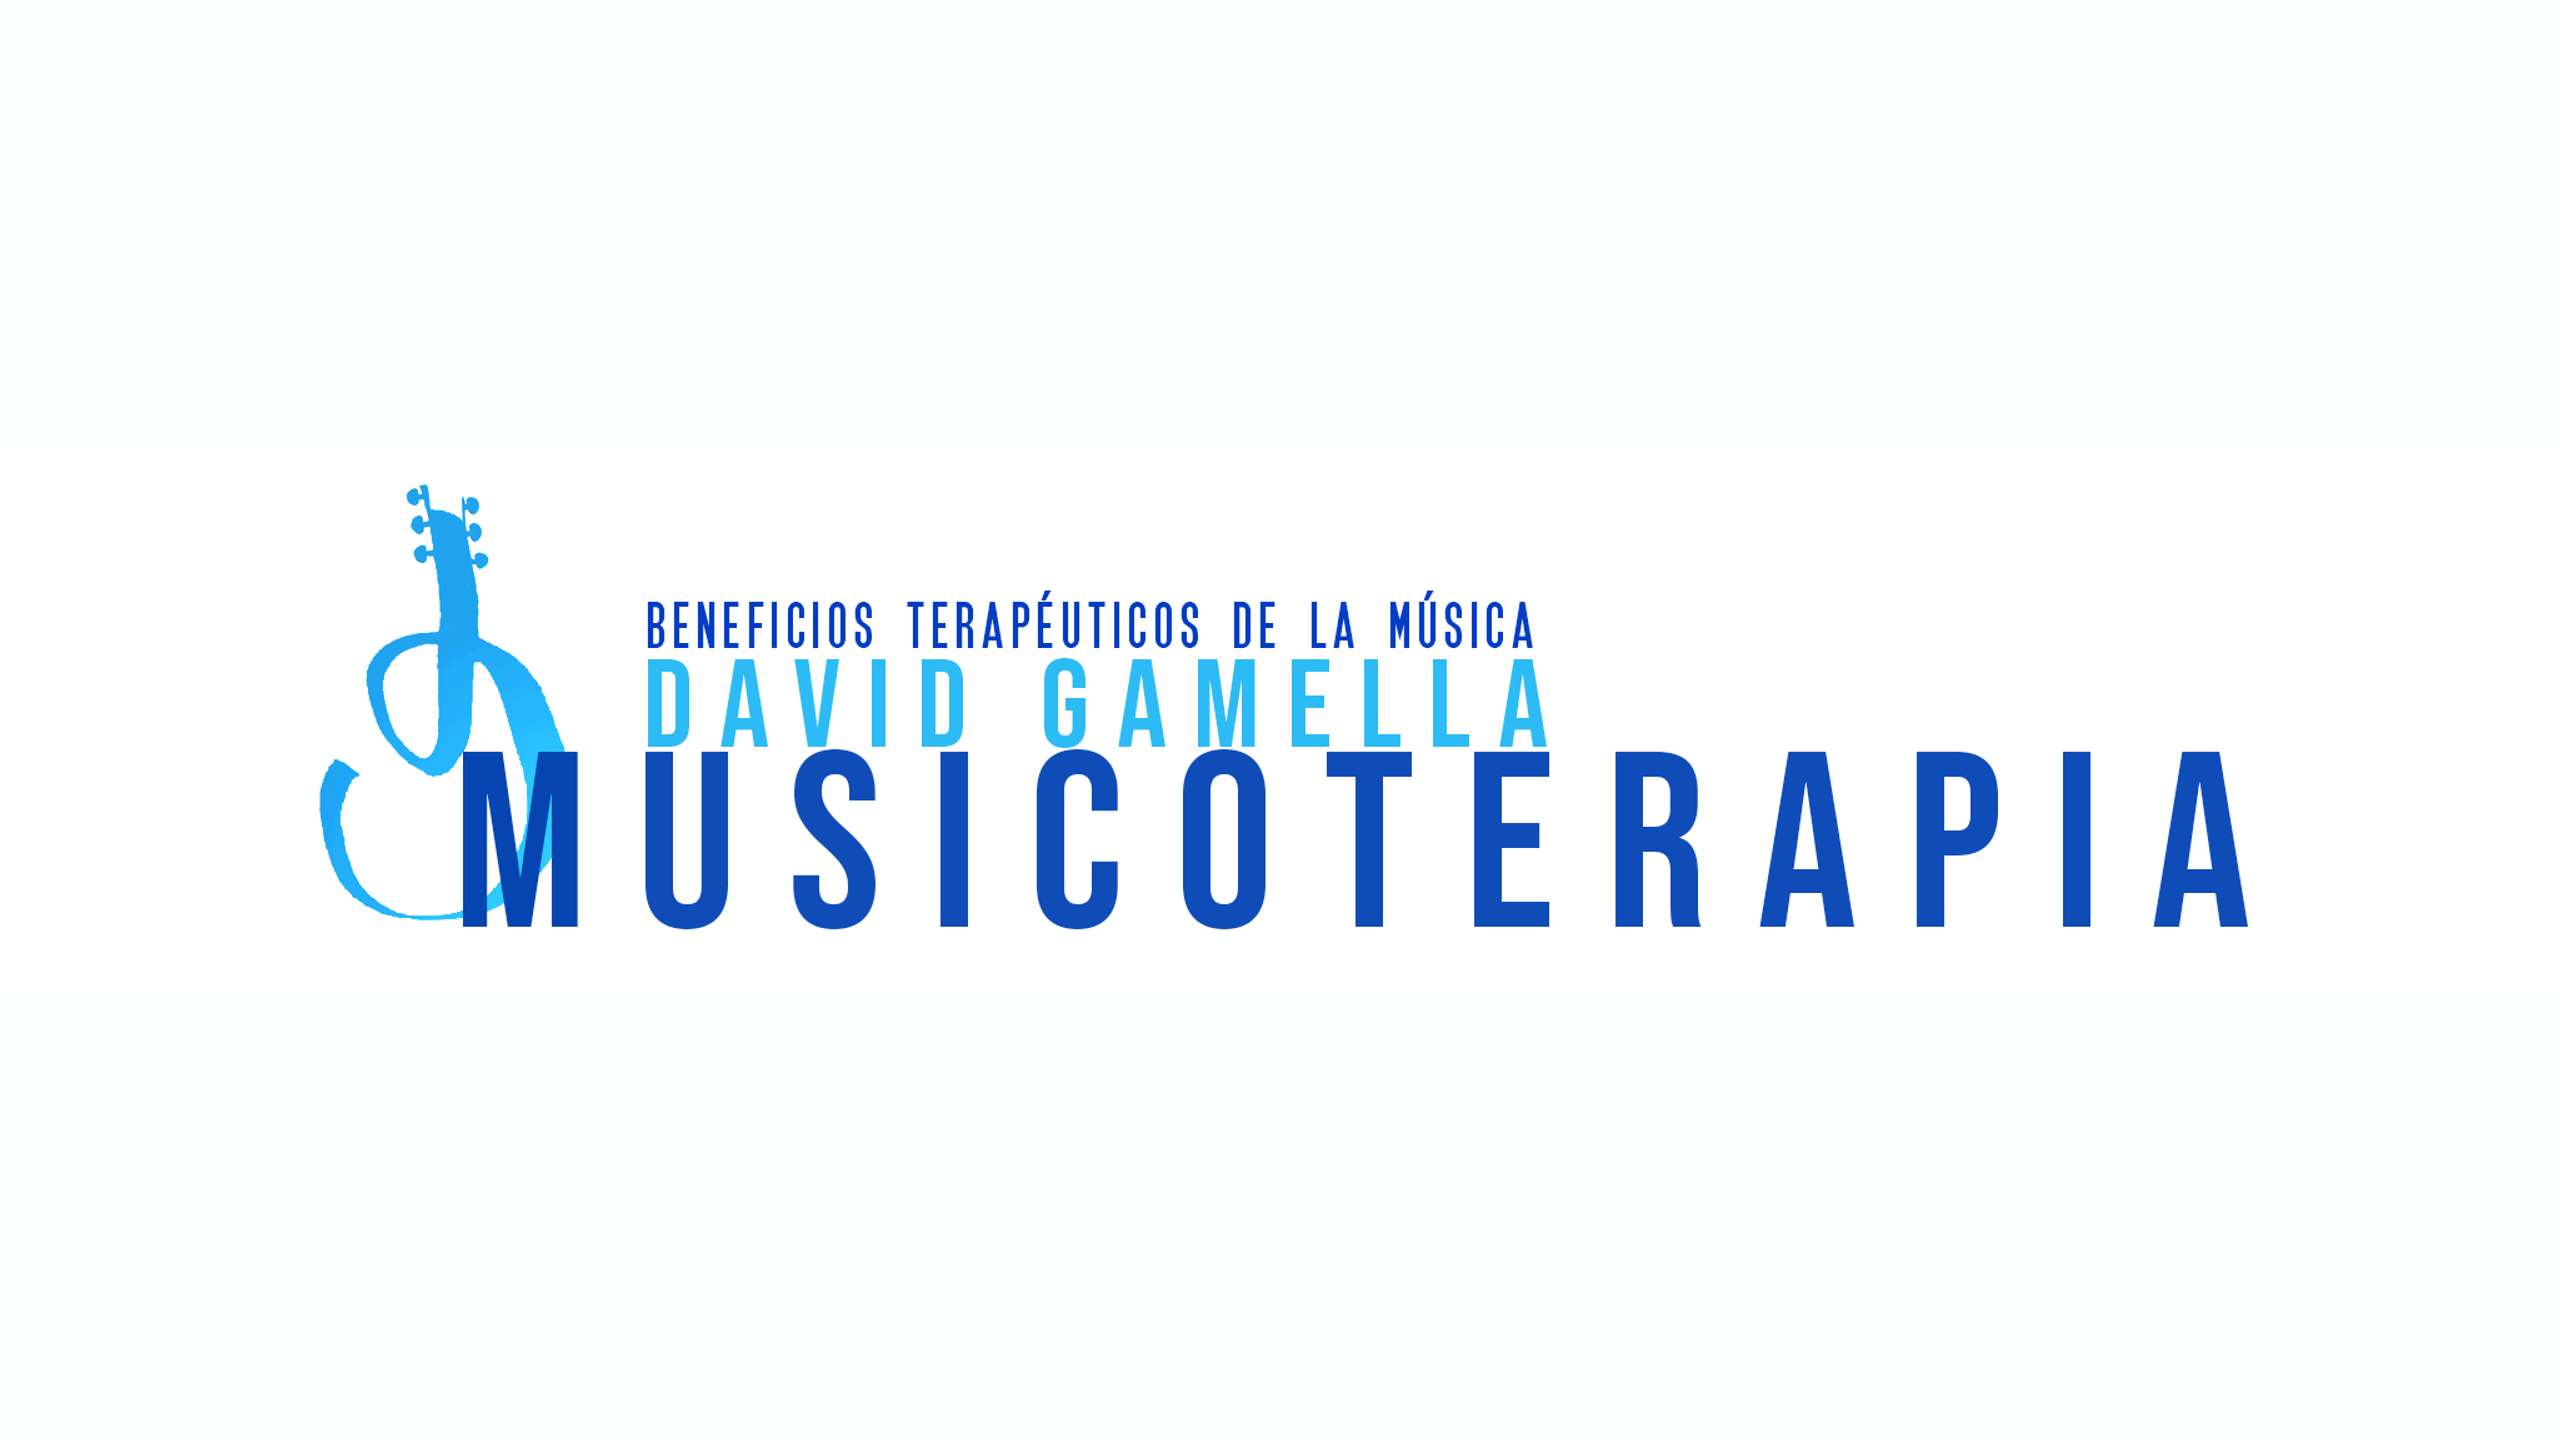 David Gamella MUSICOTERAPIA